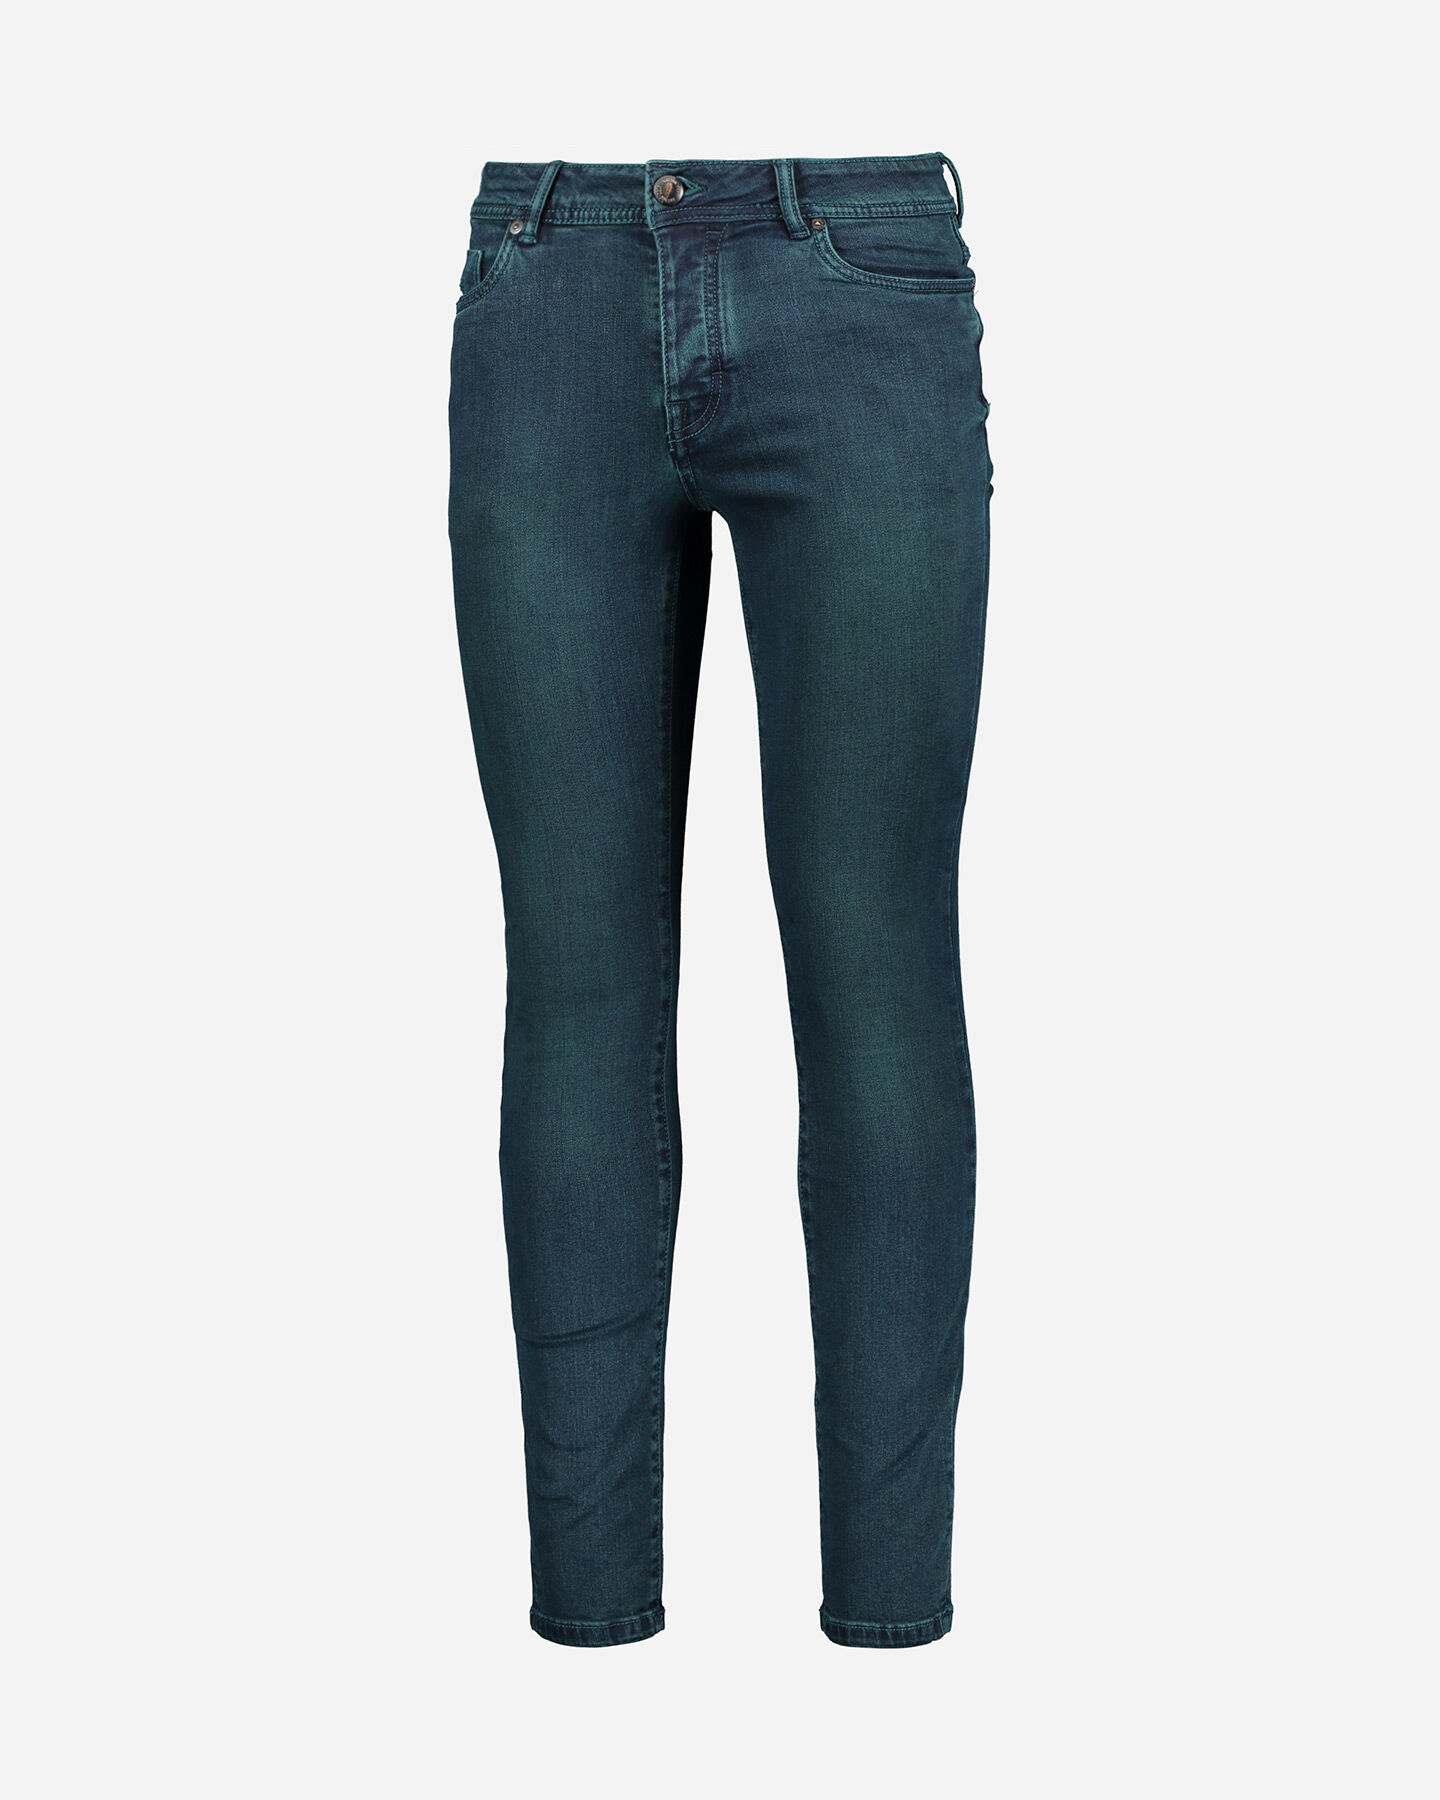  Jeans COTTON BELT CHANDLER SLIM M S4070901|M788|30 scatto 4